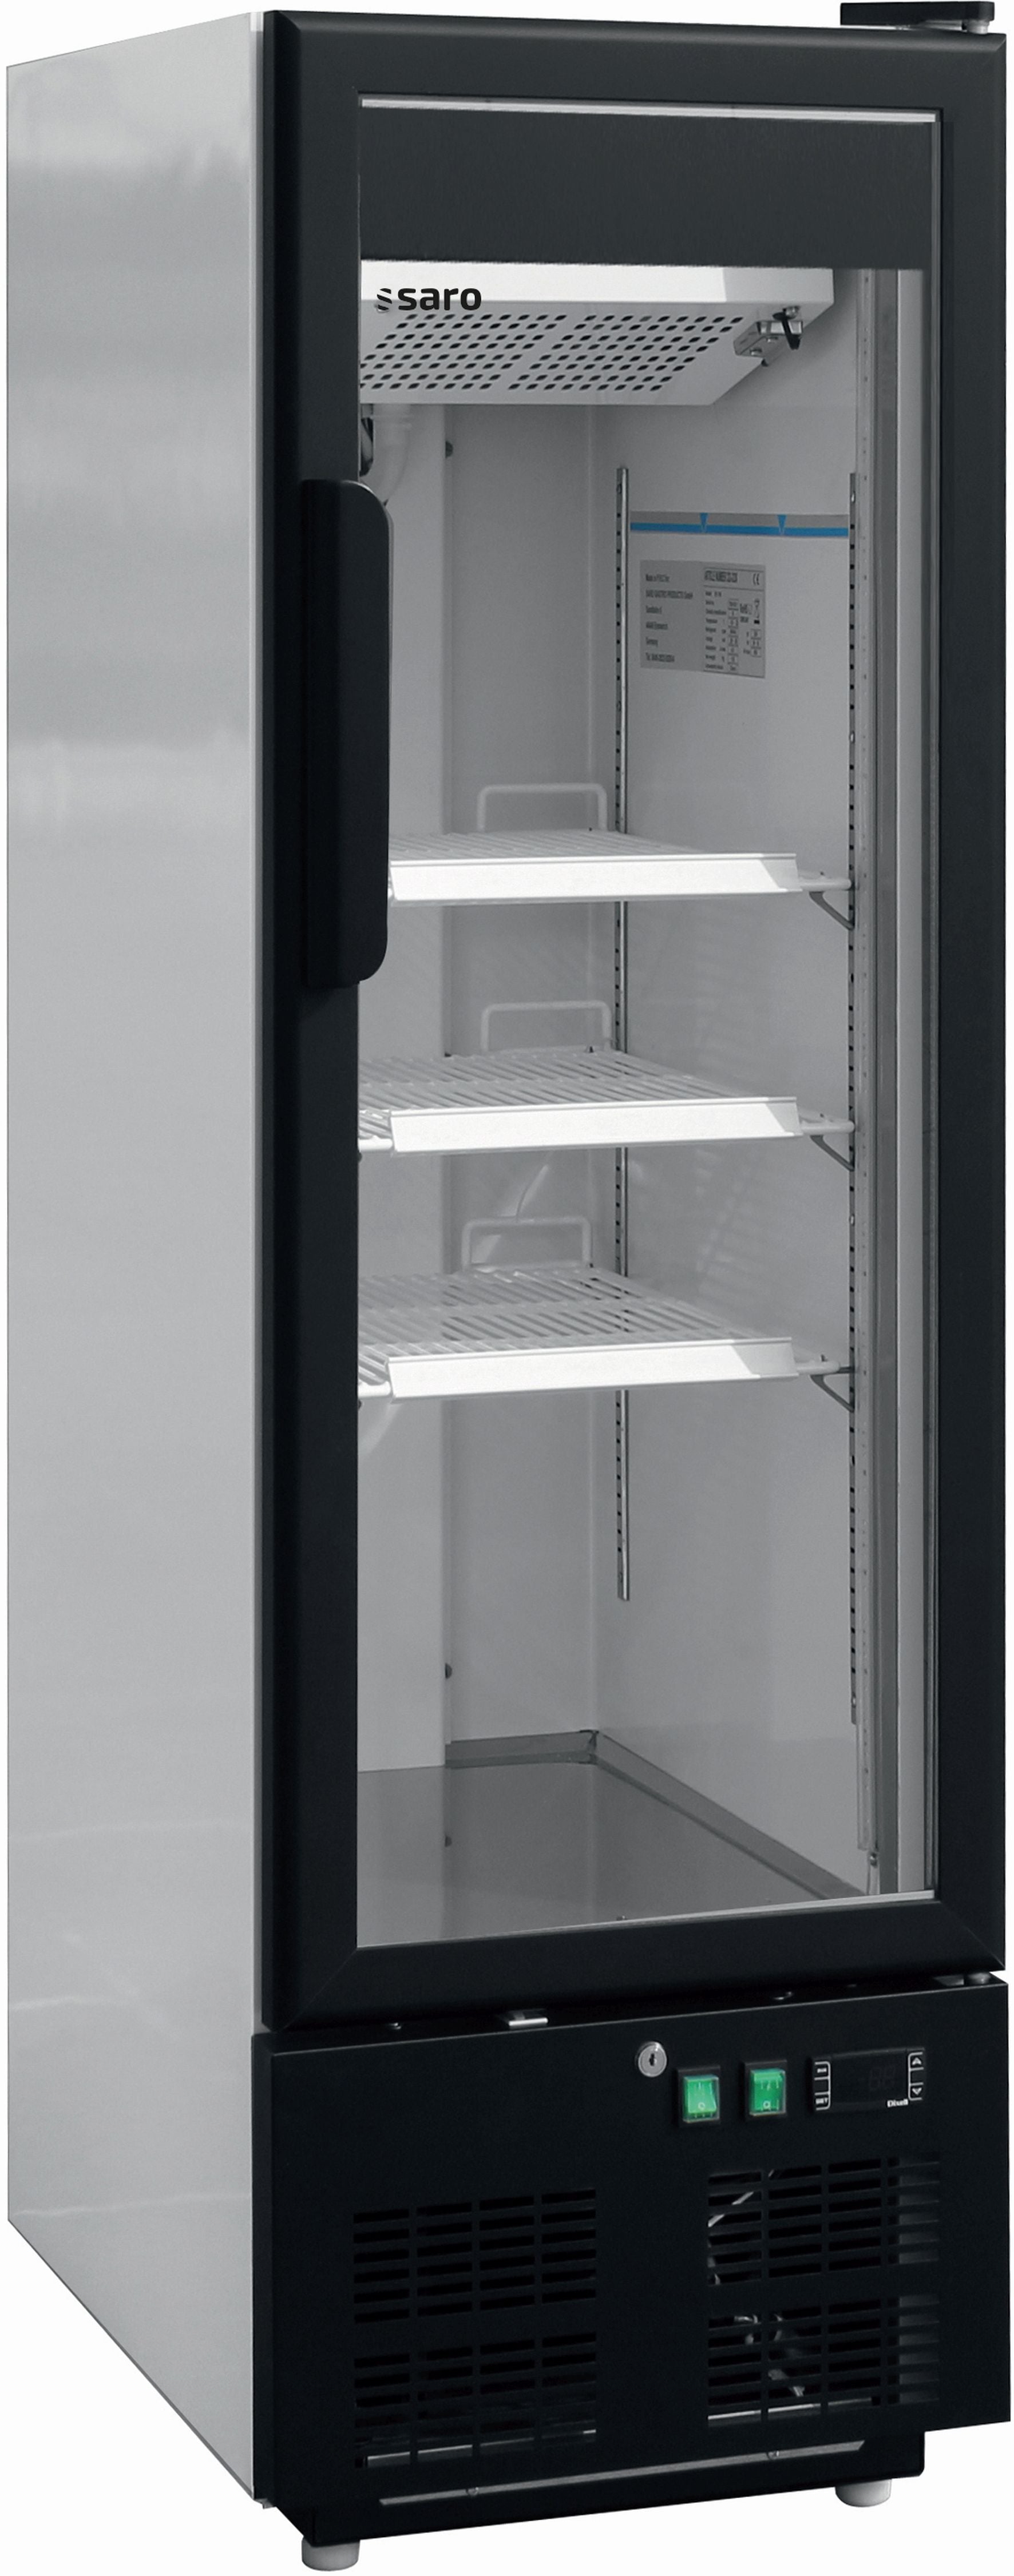 SARO Displayfryser med glaslåge, model EK 199